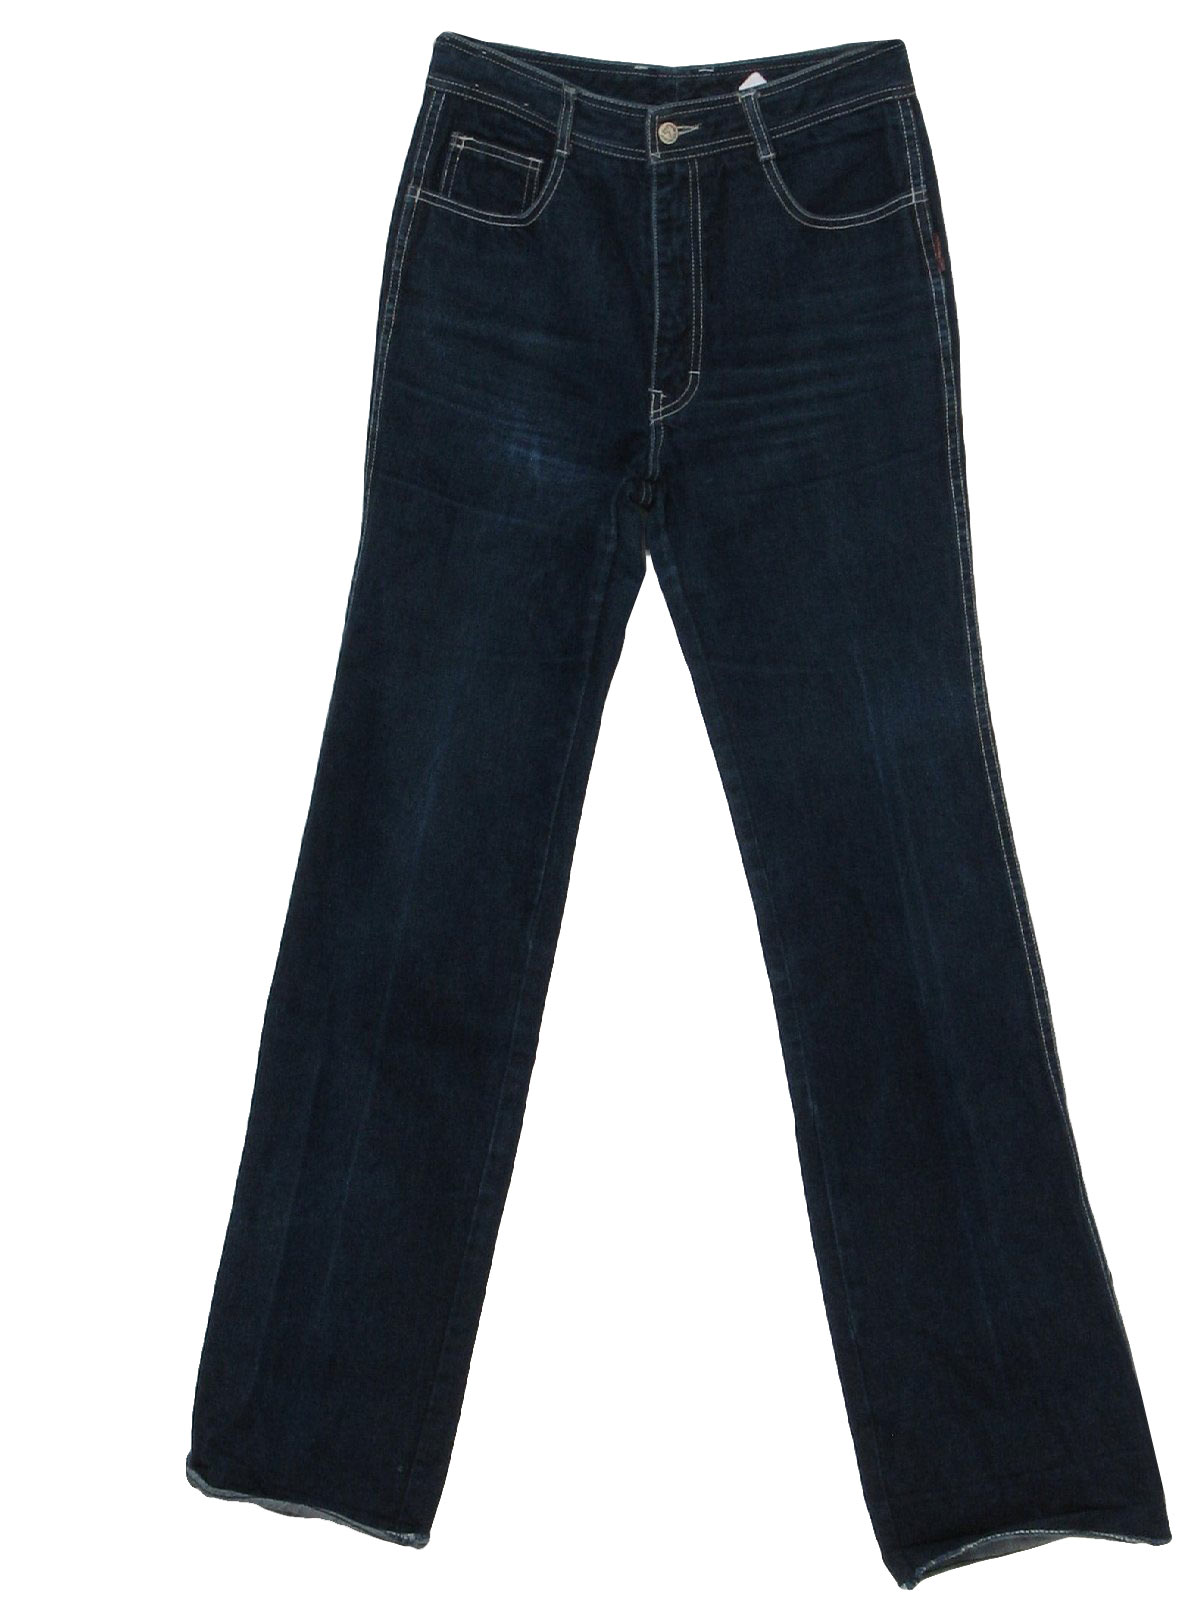 Retro 1980's Pants (Jordache) : 80s -Jordache- Womens dark blue cotton ...